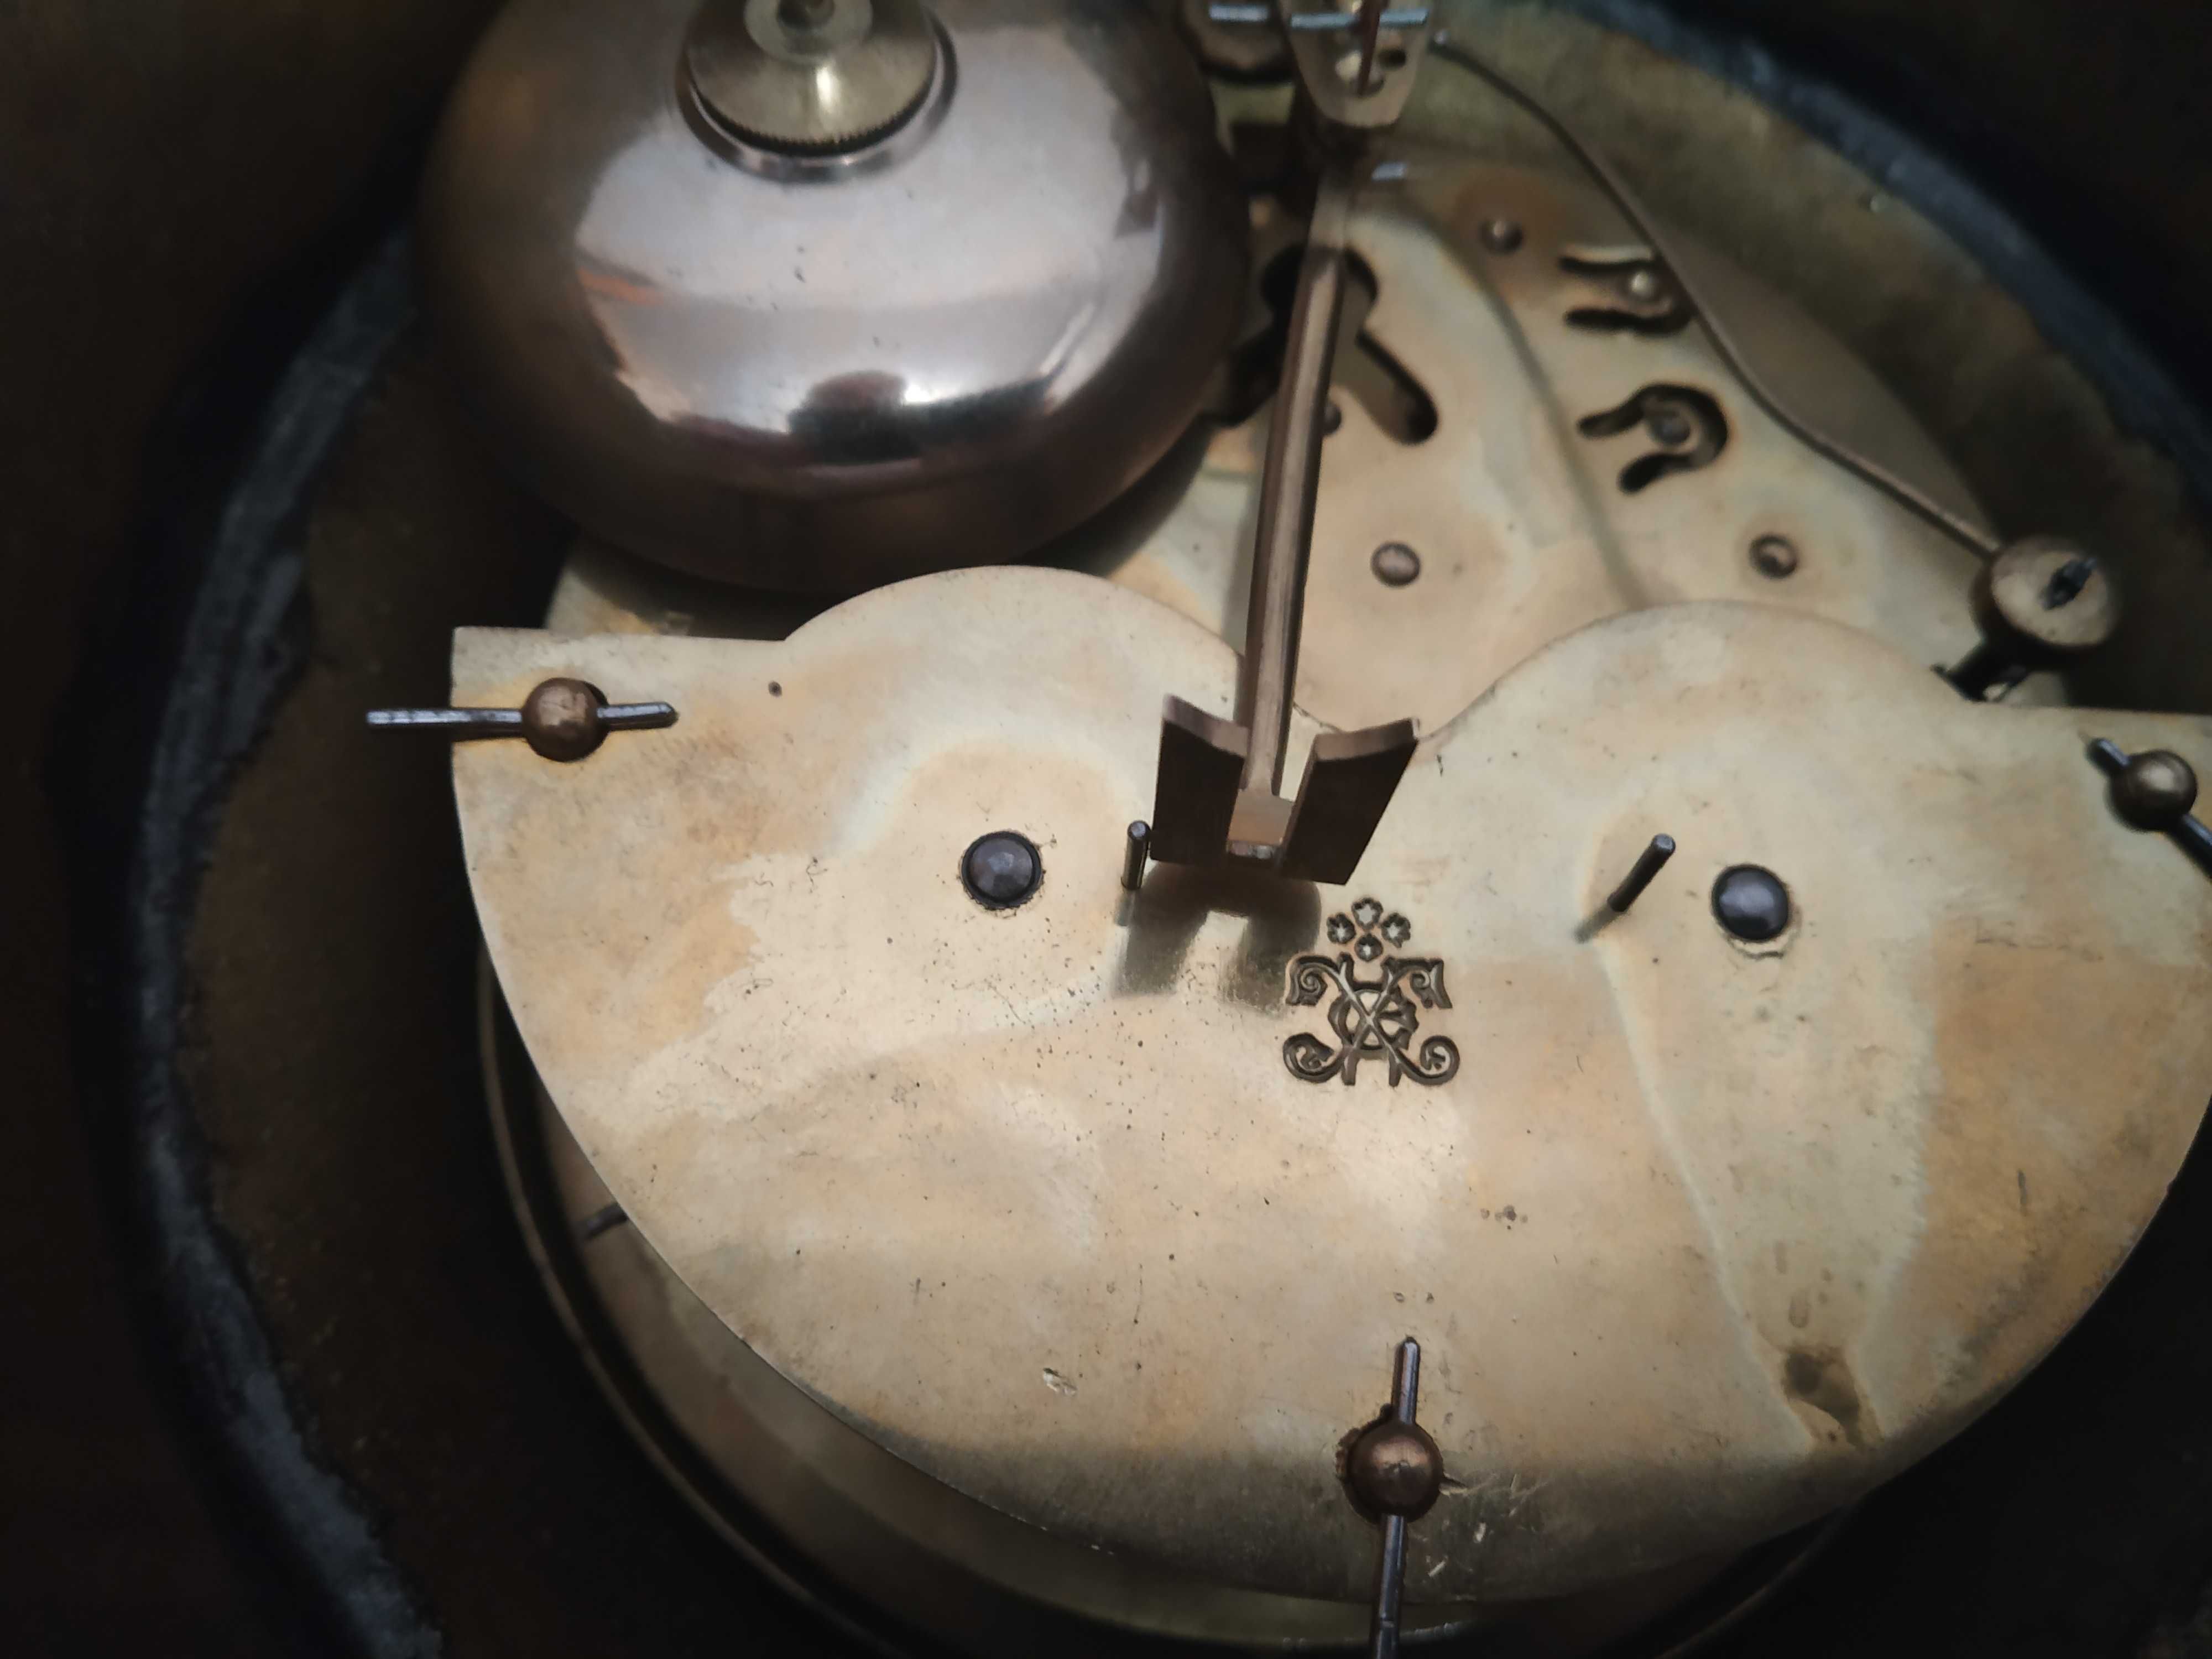 Настенные бронзовые часы. ХIХ век. Франция.